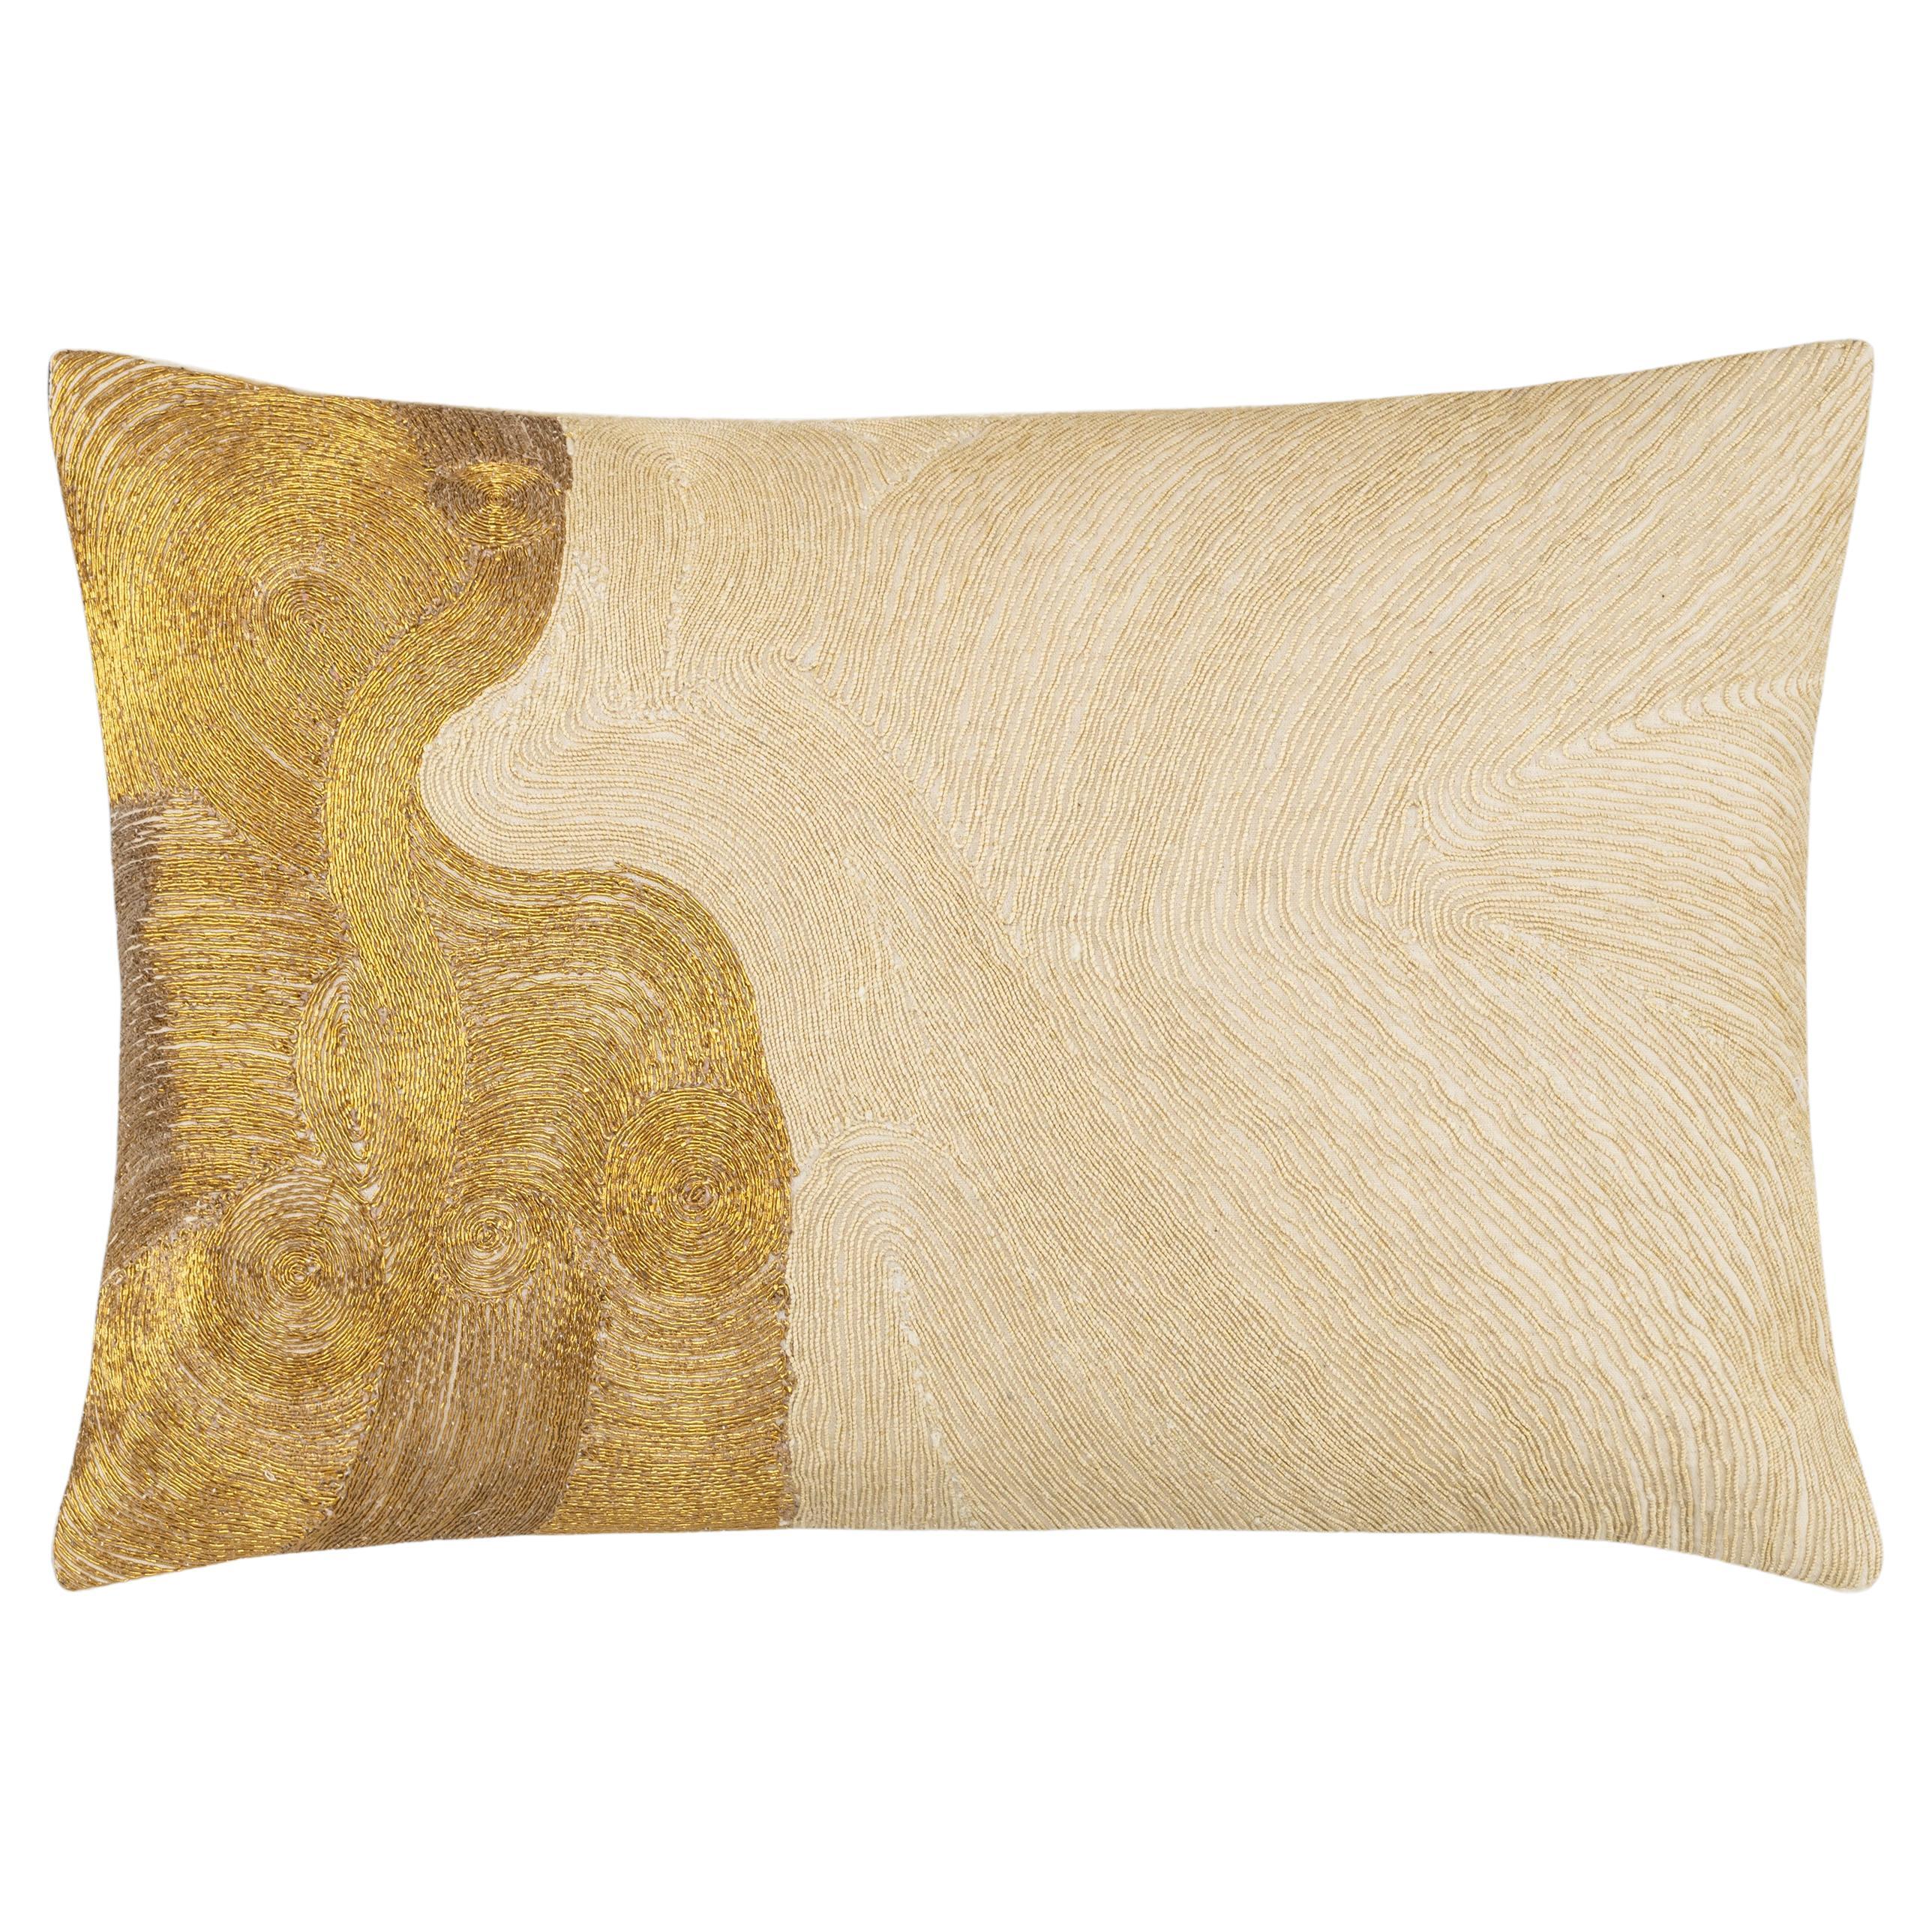 Zer Lumbar Pillow, Ivory and Gold 